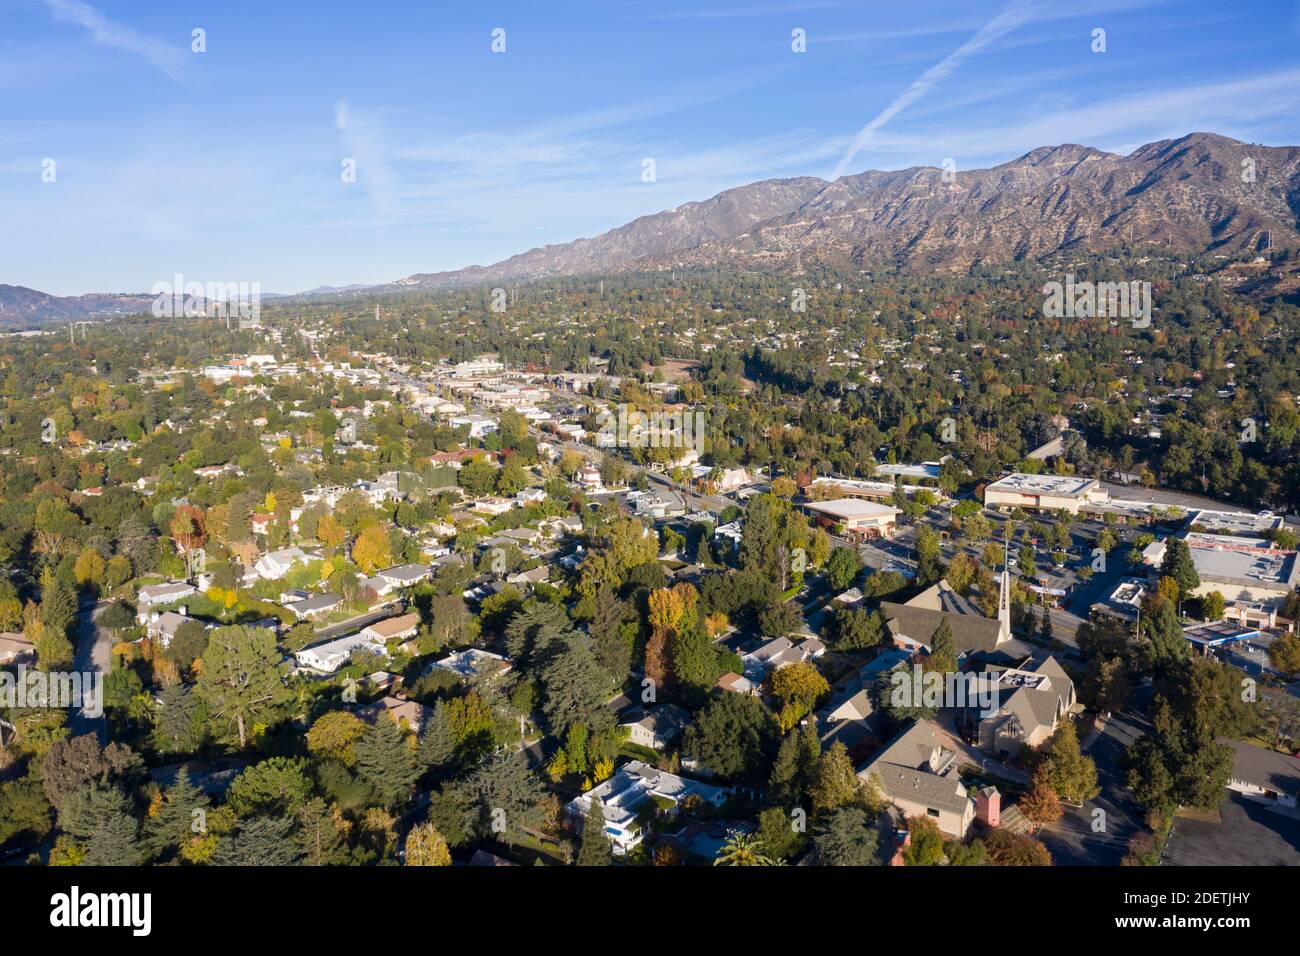 Vista aerea di la Canada Flintridge ai piedi del Le montagne di San Gabriel della California Foto Stock